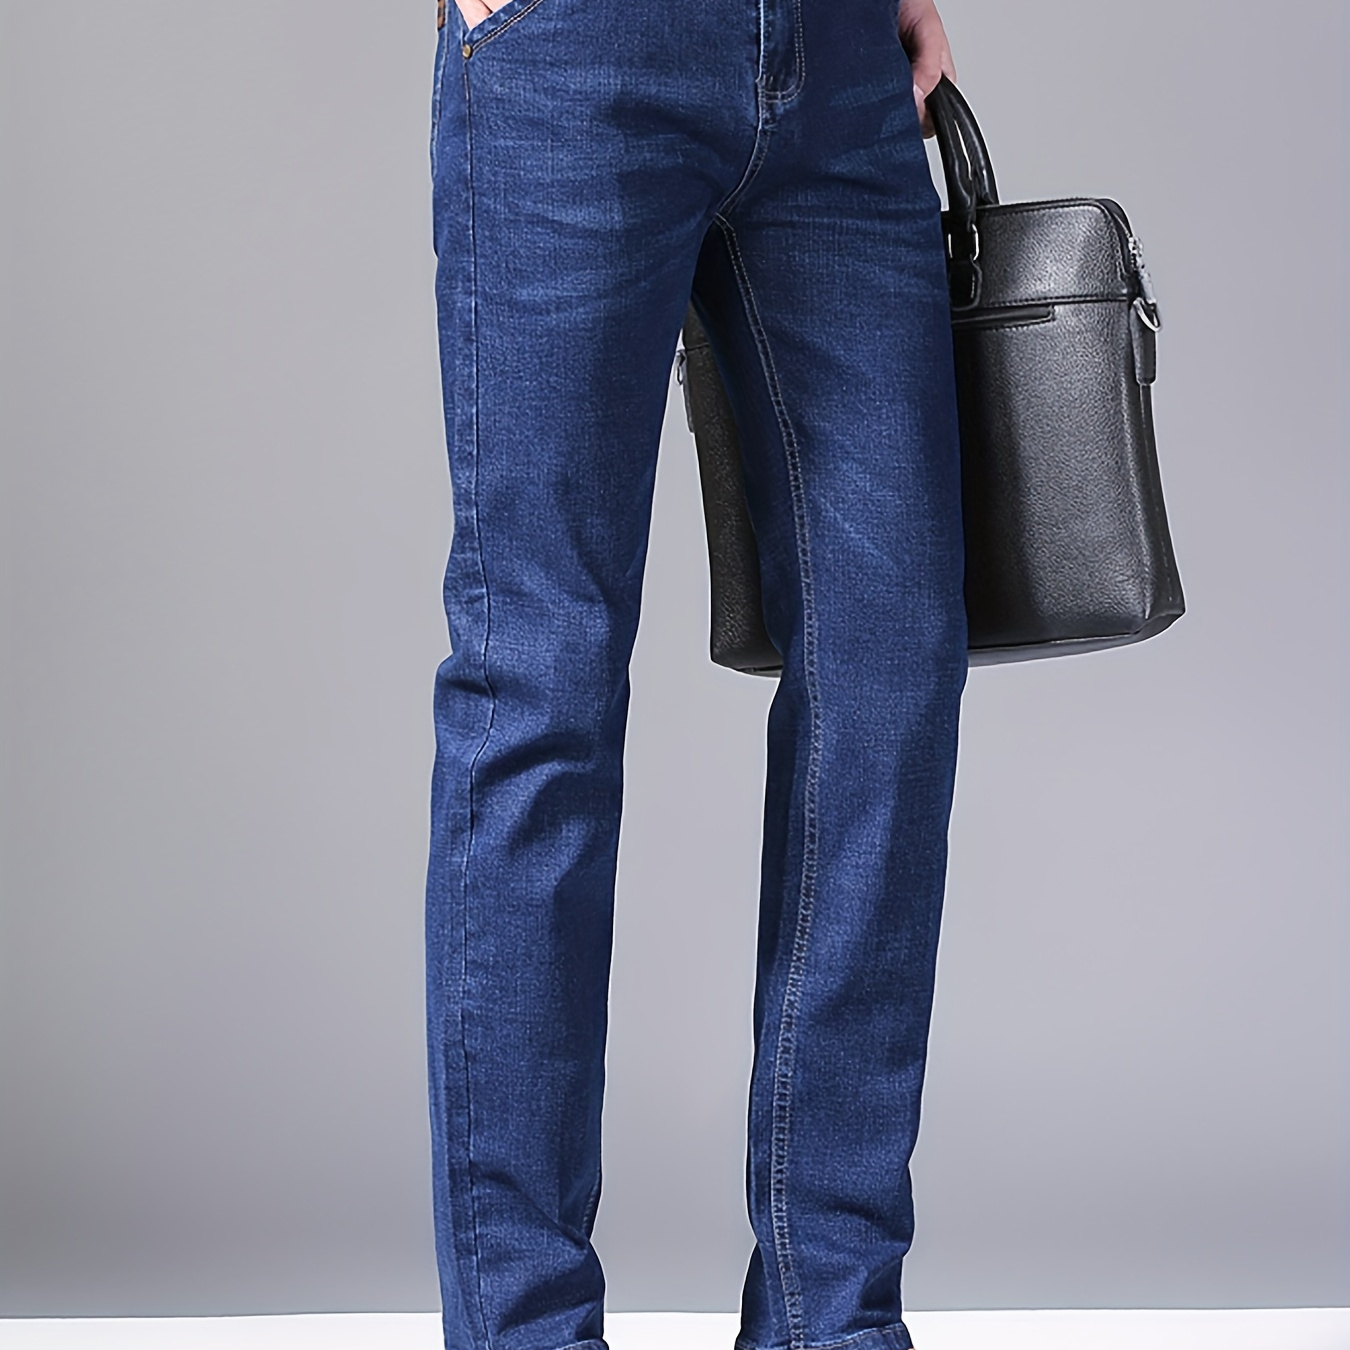 

Regular Fit Jeans, Men's Casual Street Style Straight Leg Slightly Stretch Denim Pants For Spring Summer, Bottoms For Men, Gift For Men